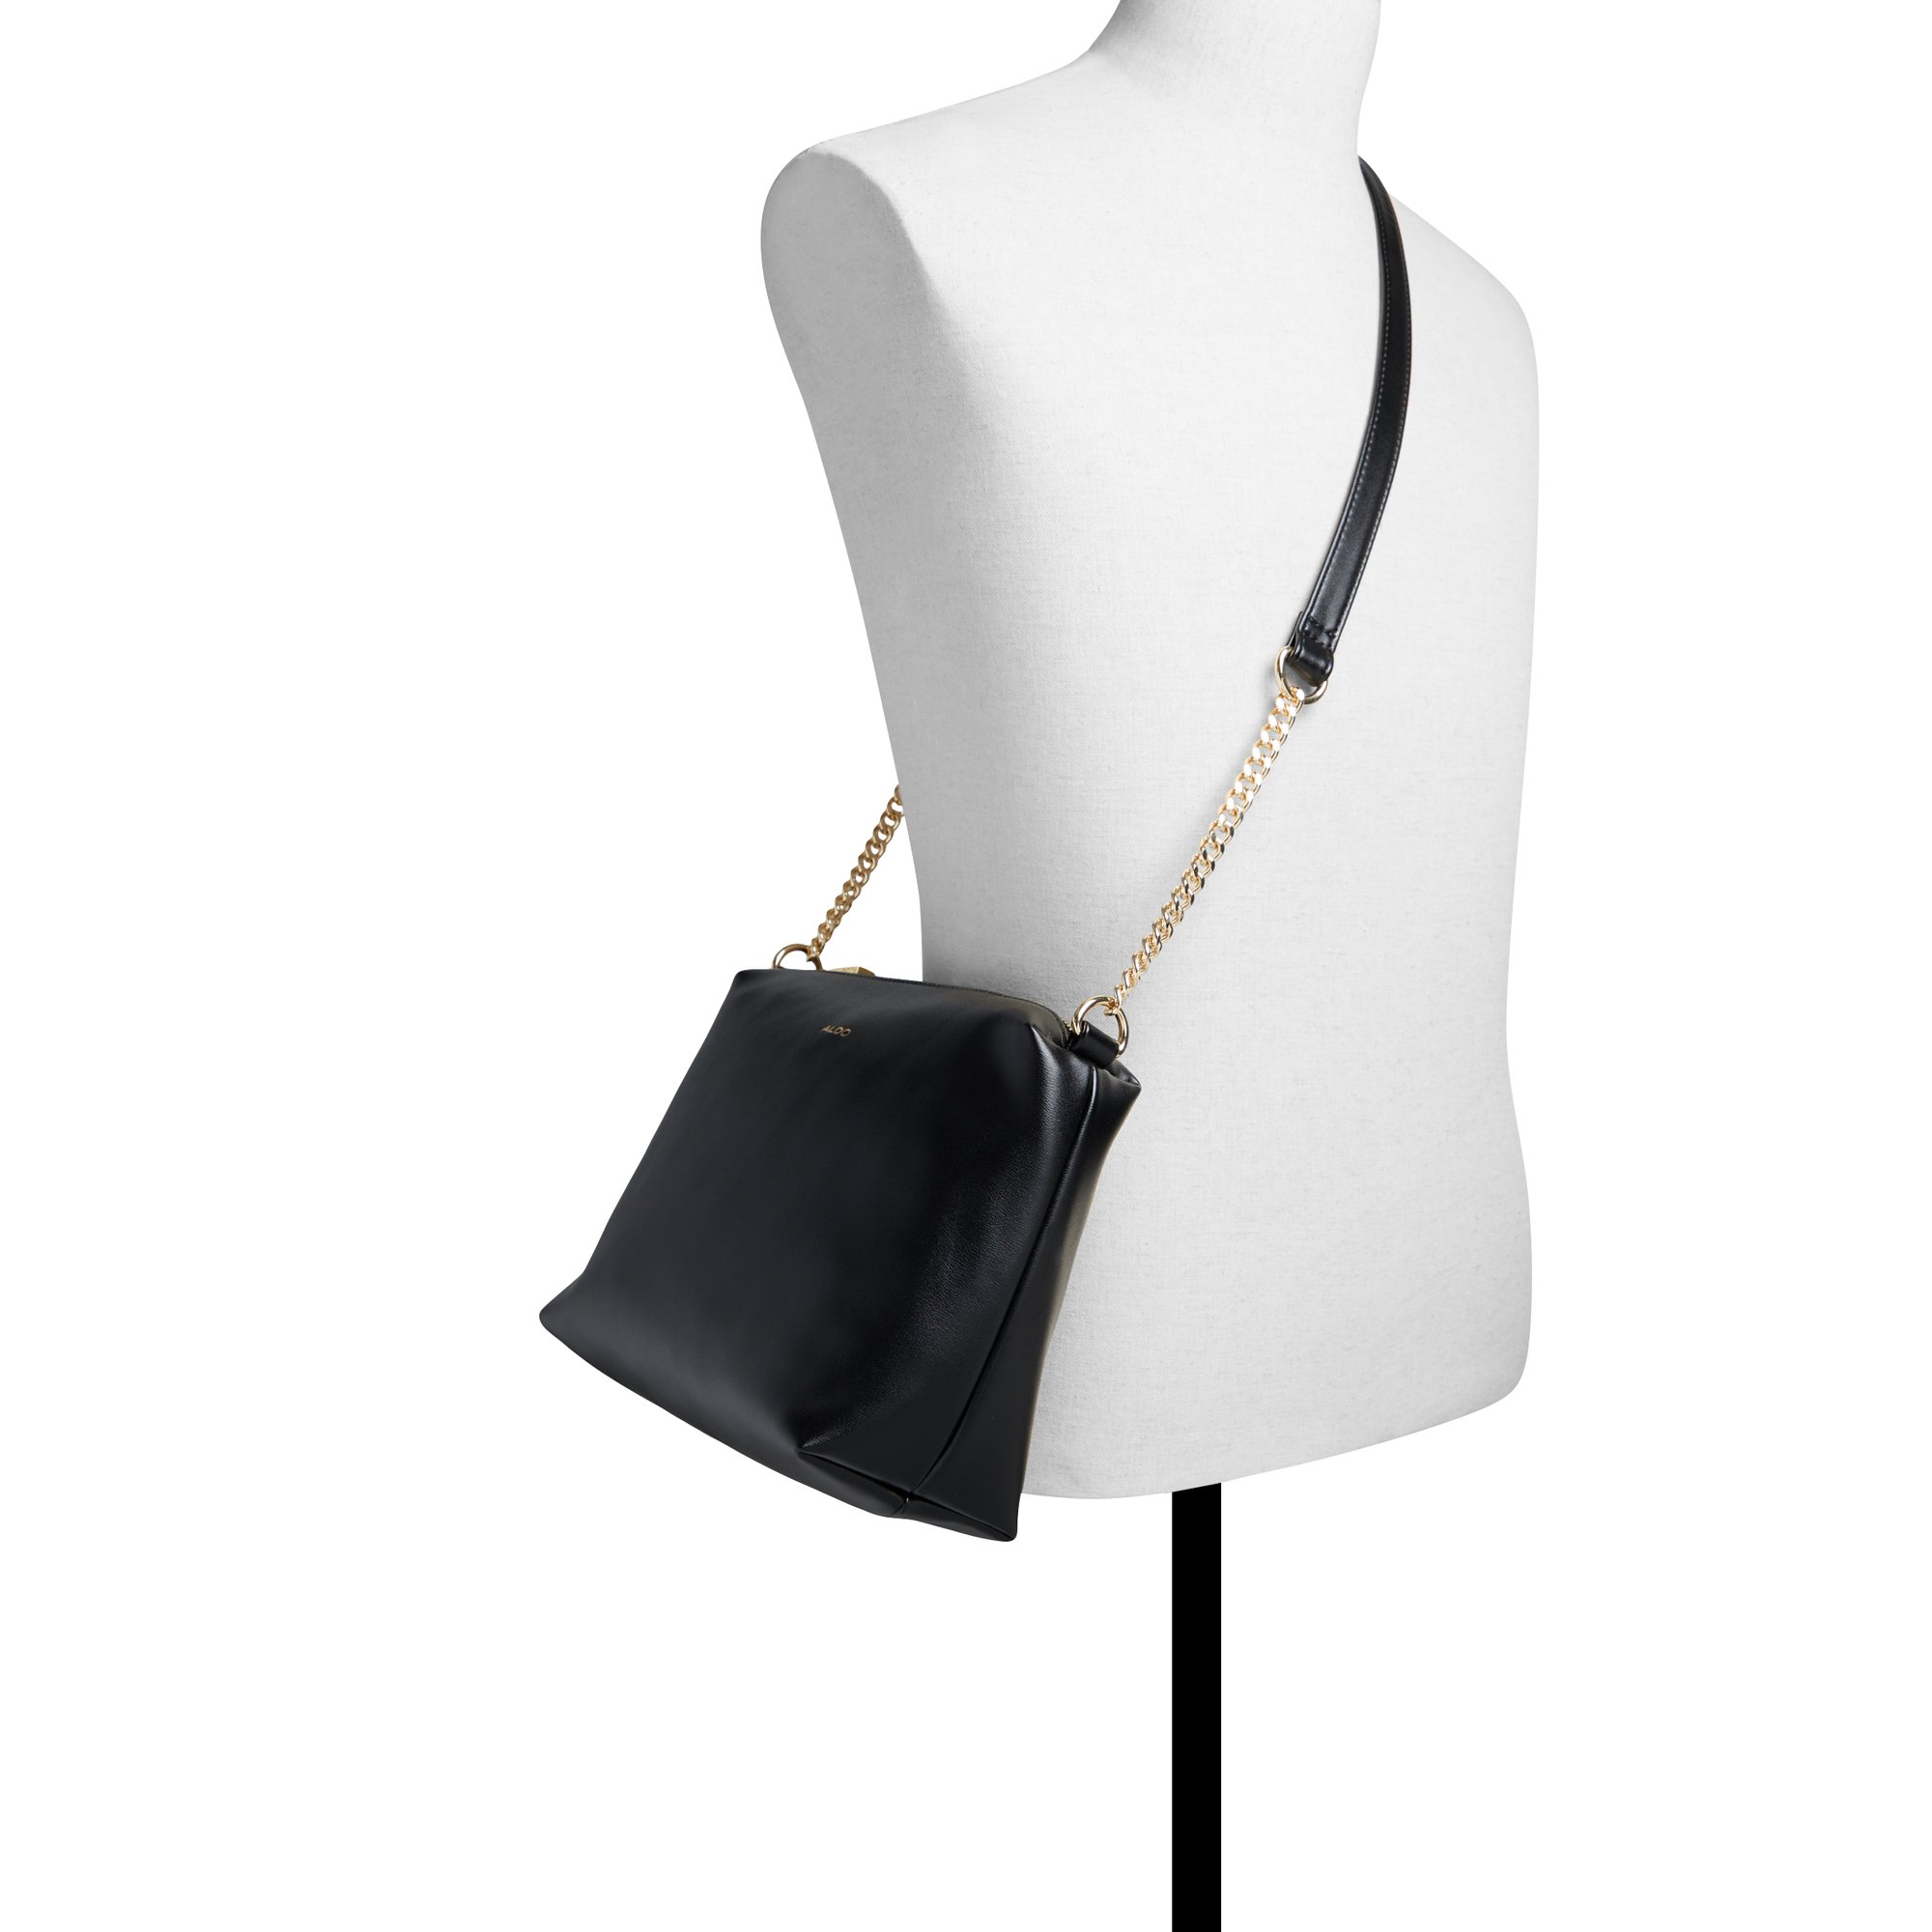 ALDO Ninetonineex - Women's Handbags Totes - Black